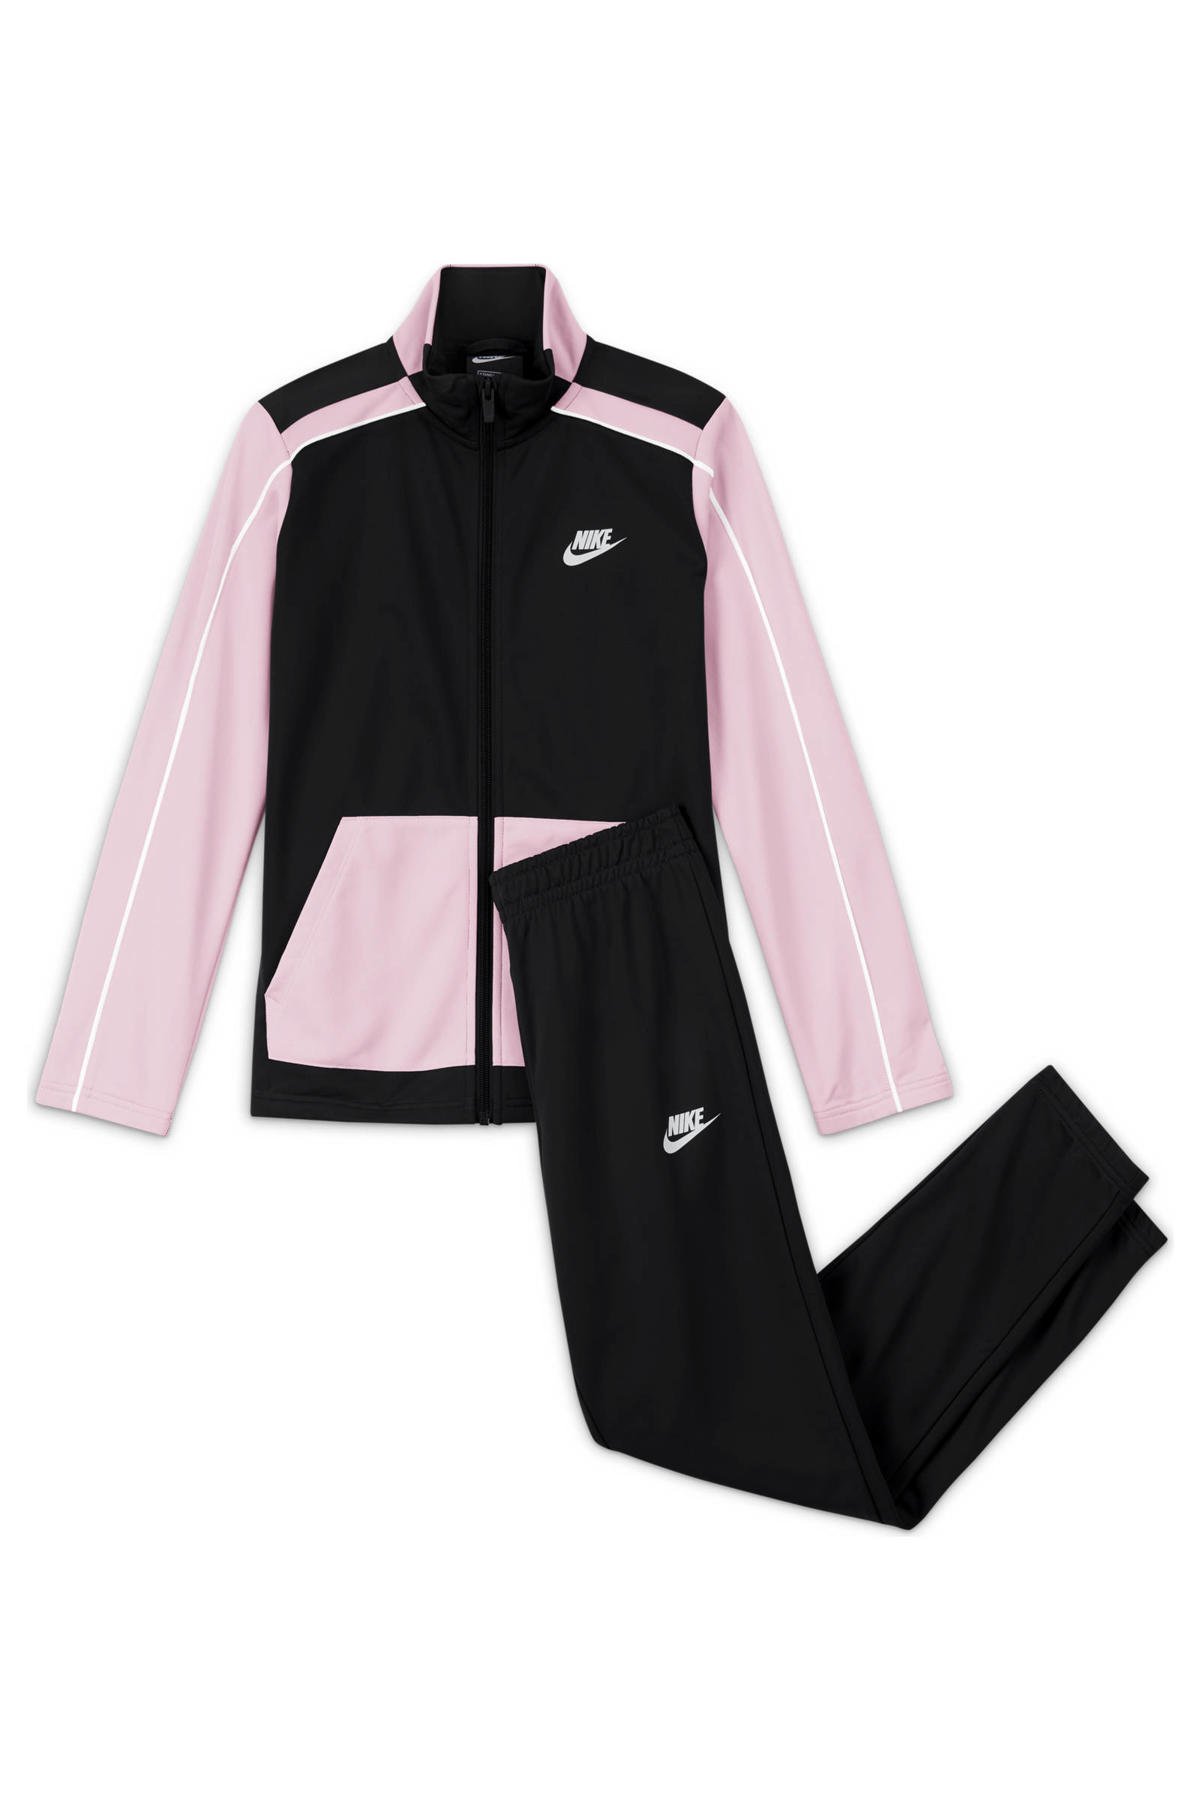 Nike trainingspak zwart/roze | Morgen in | wehkamp